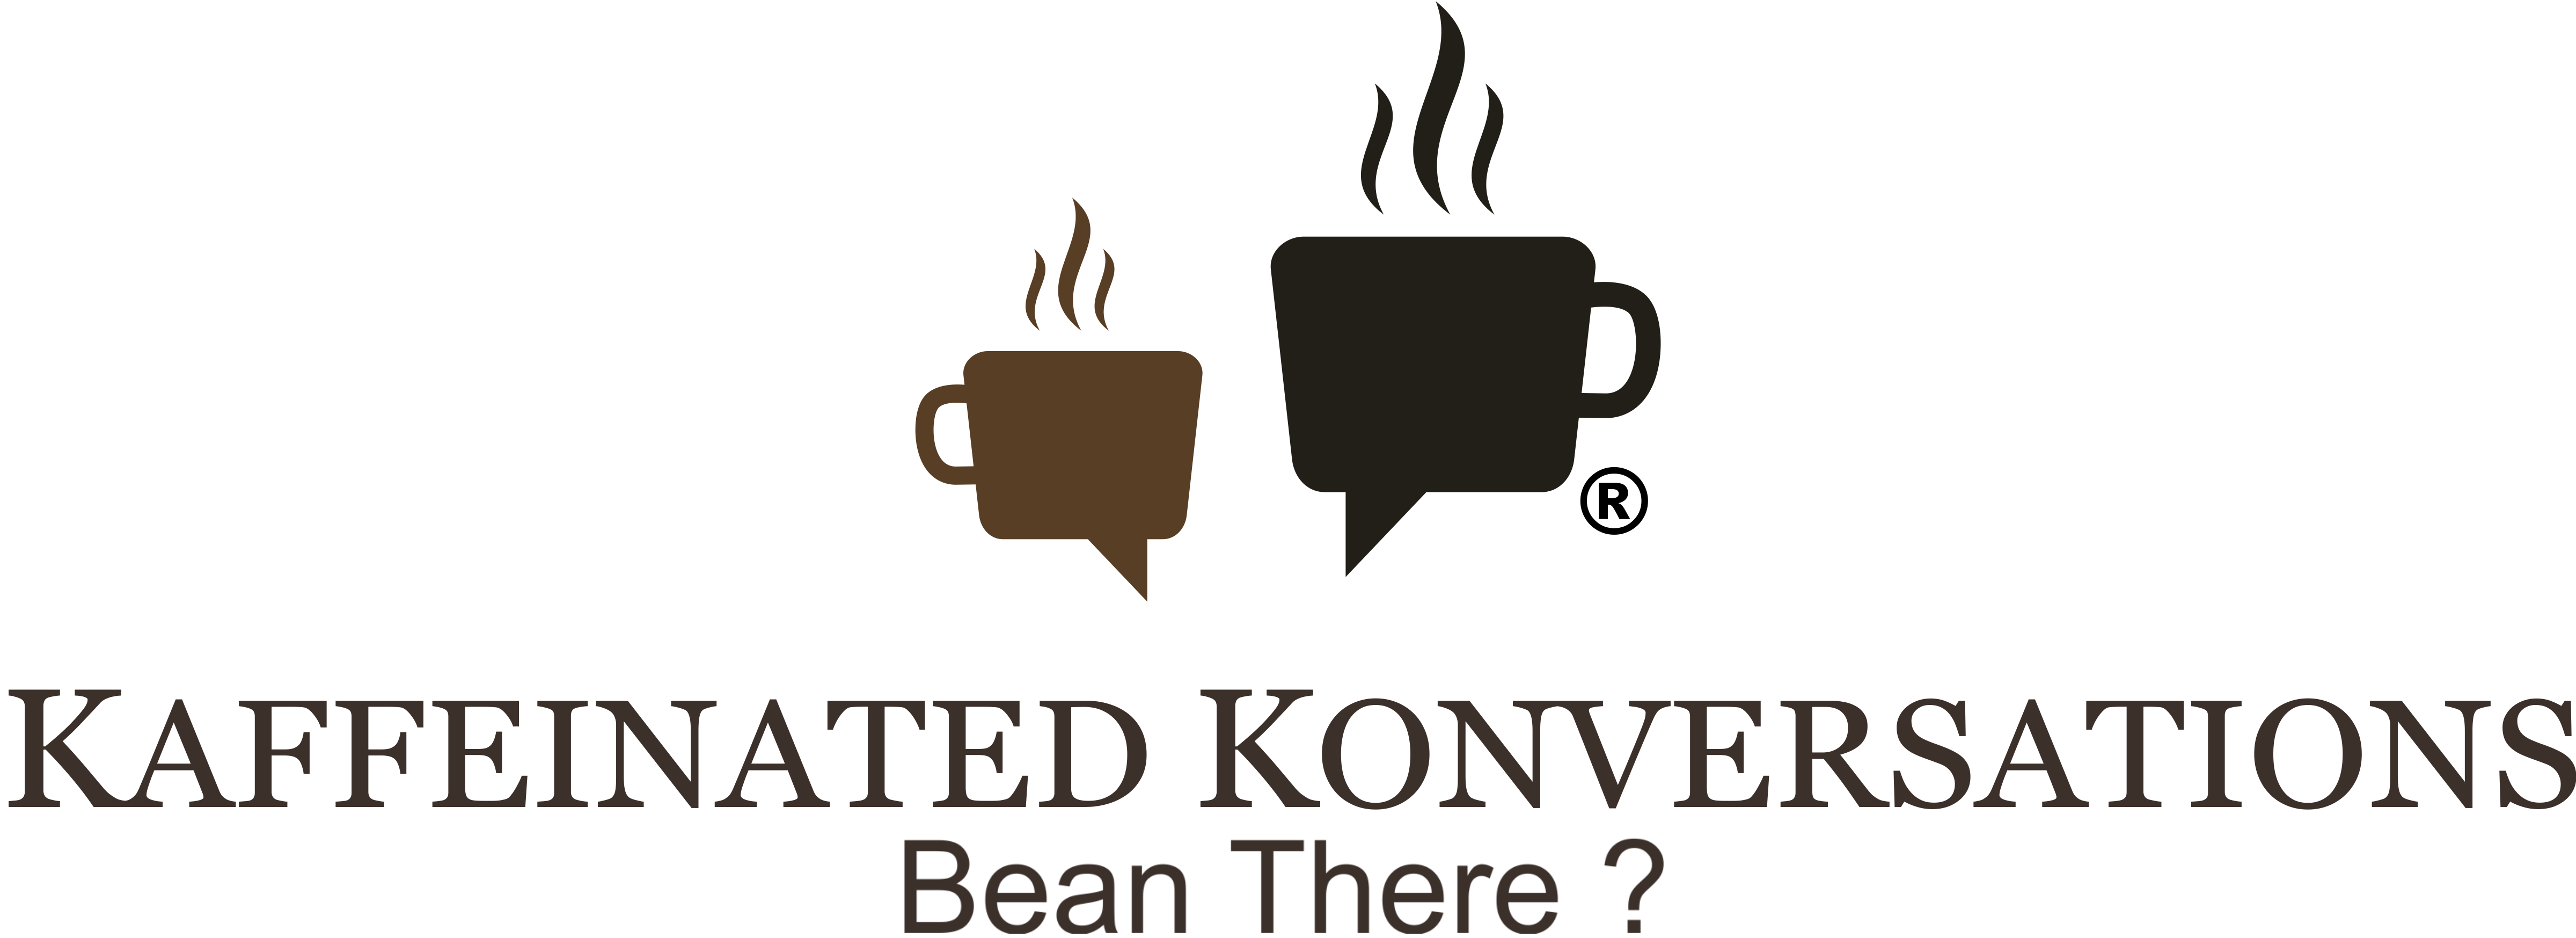 Kaffeinated Konversations, Indore